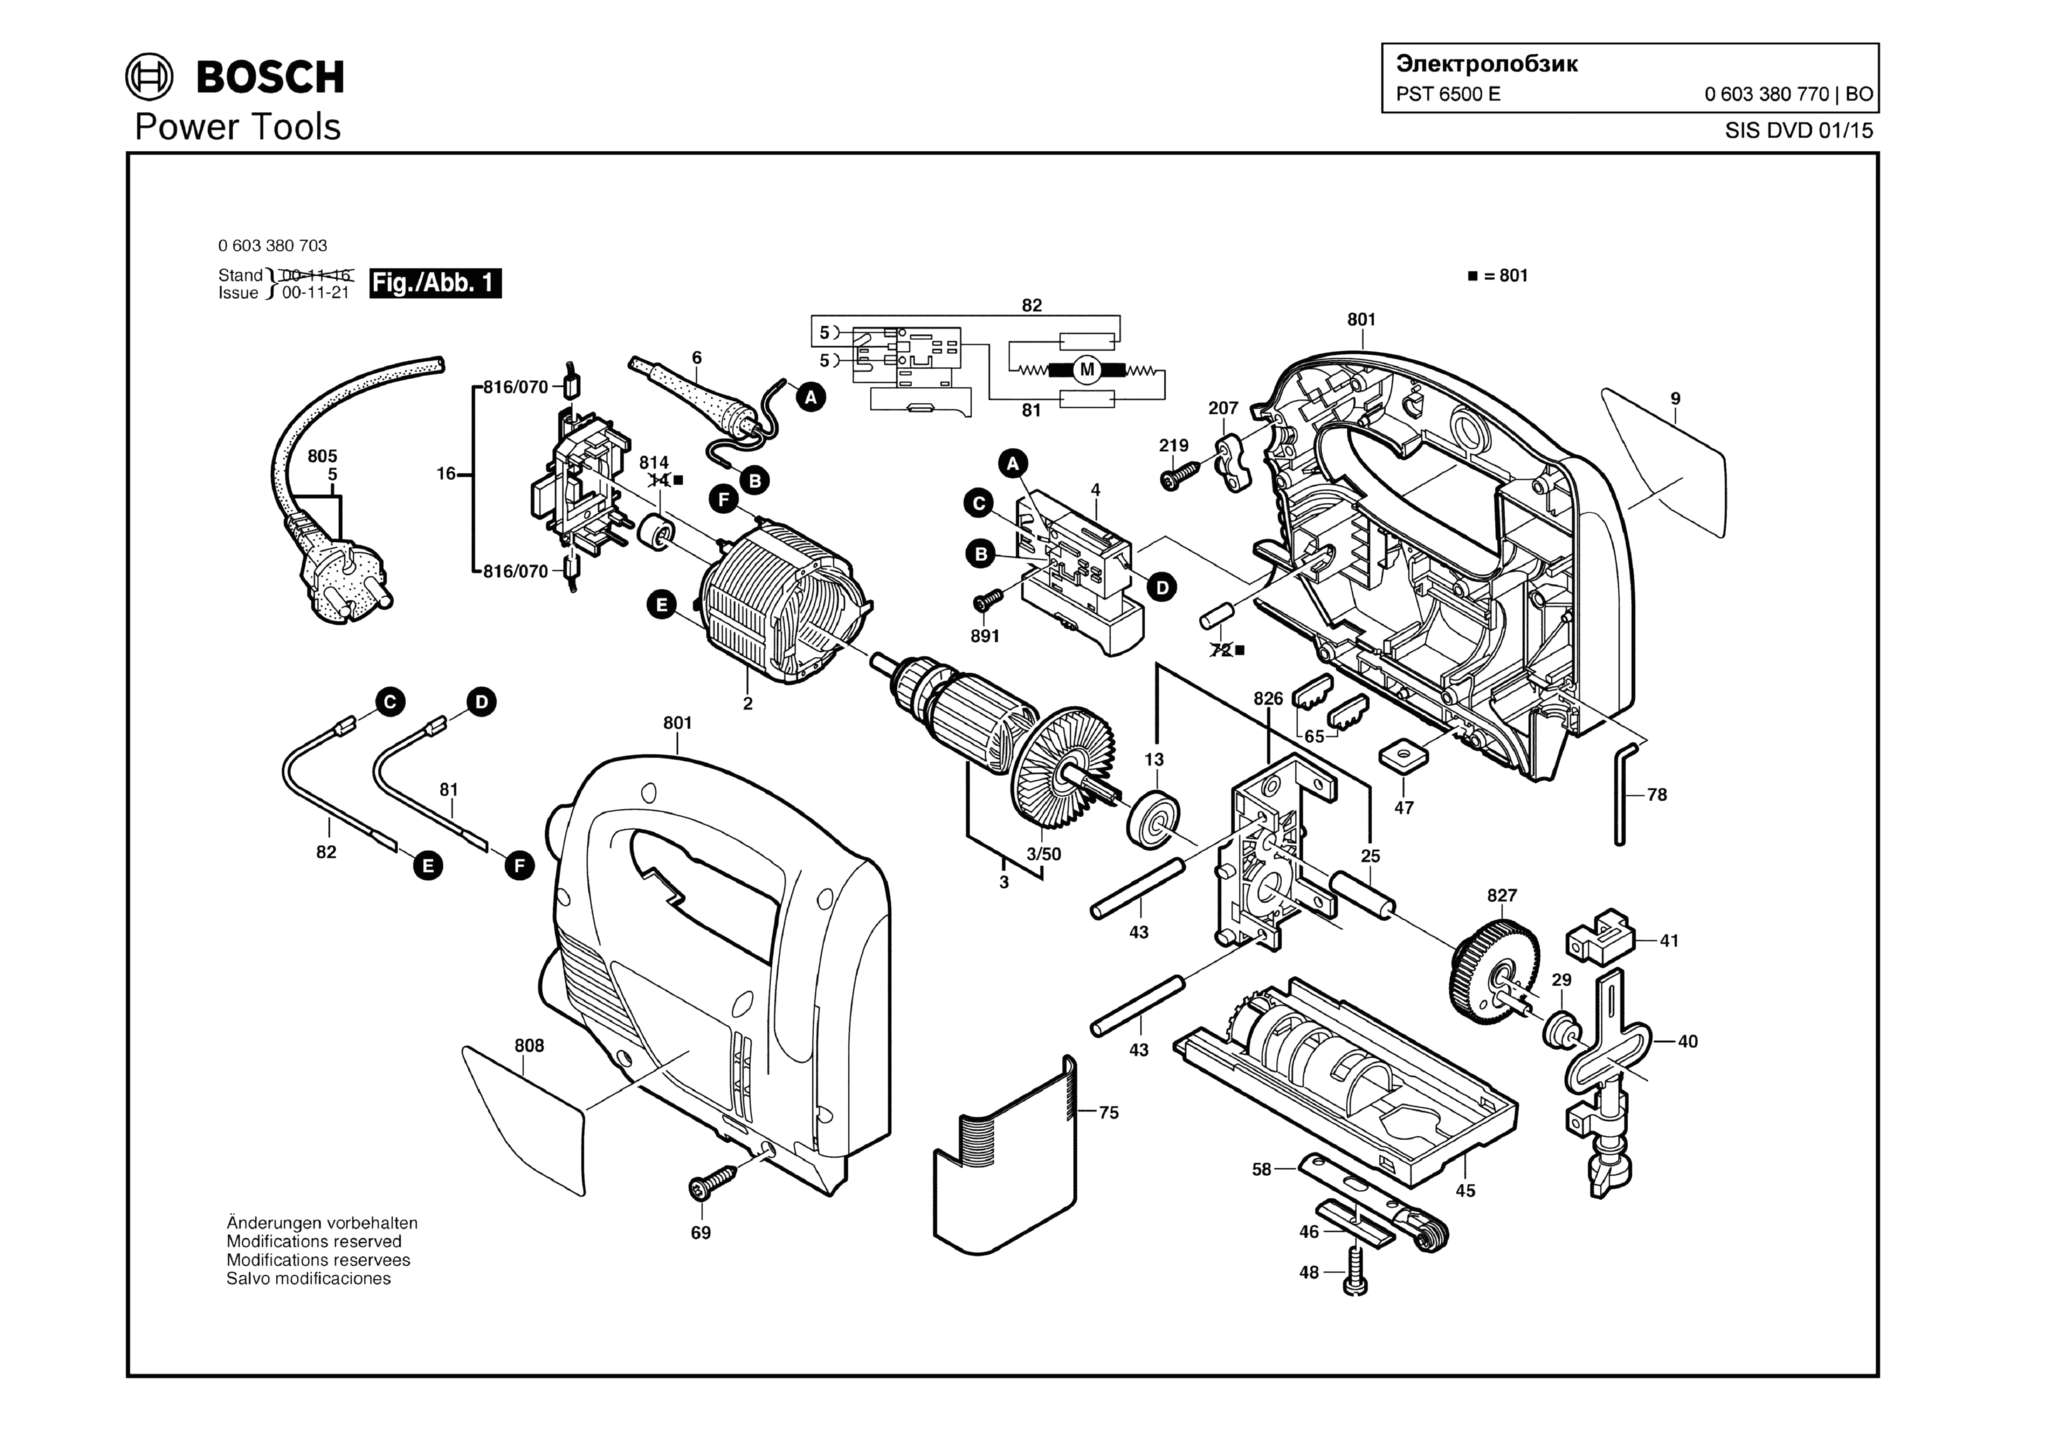 Запчасти, схема и деталировка Bosch PST 6500 E (ТИП 0603380770)